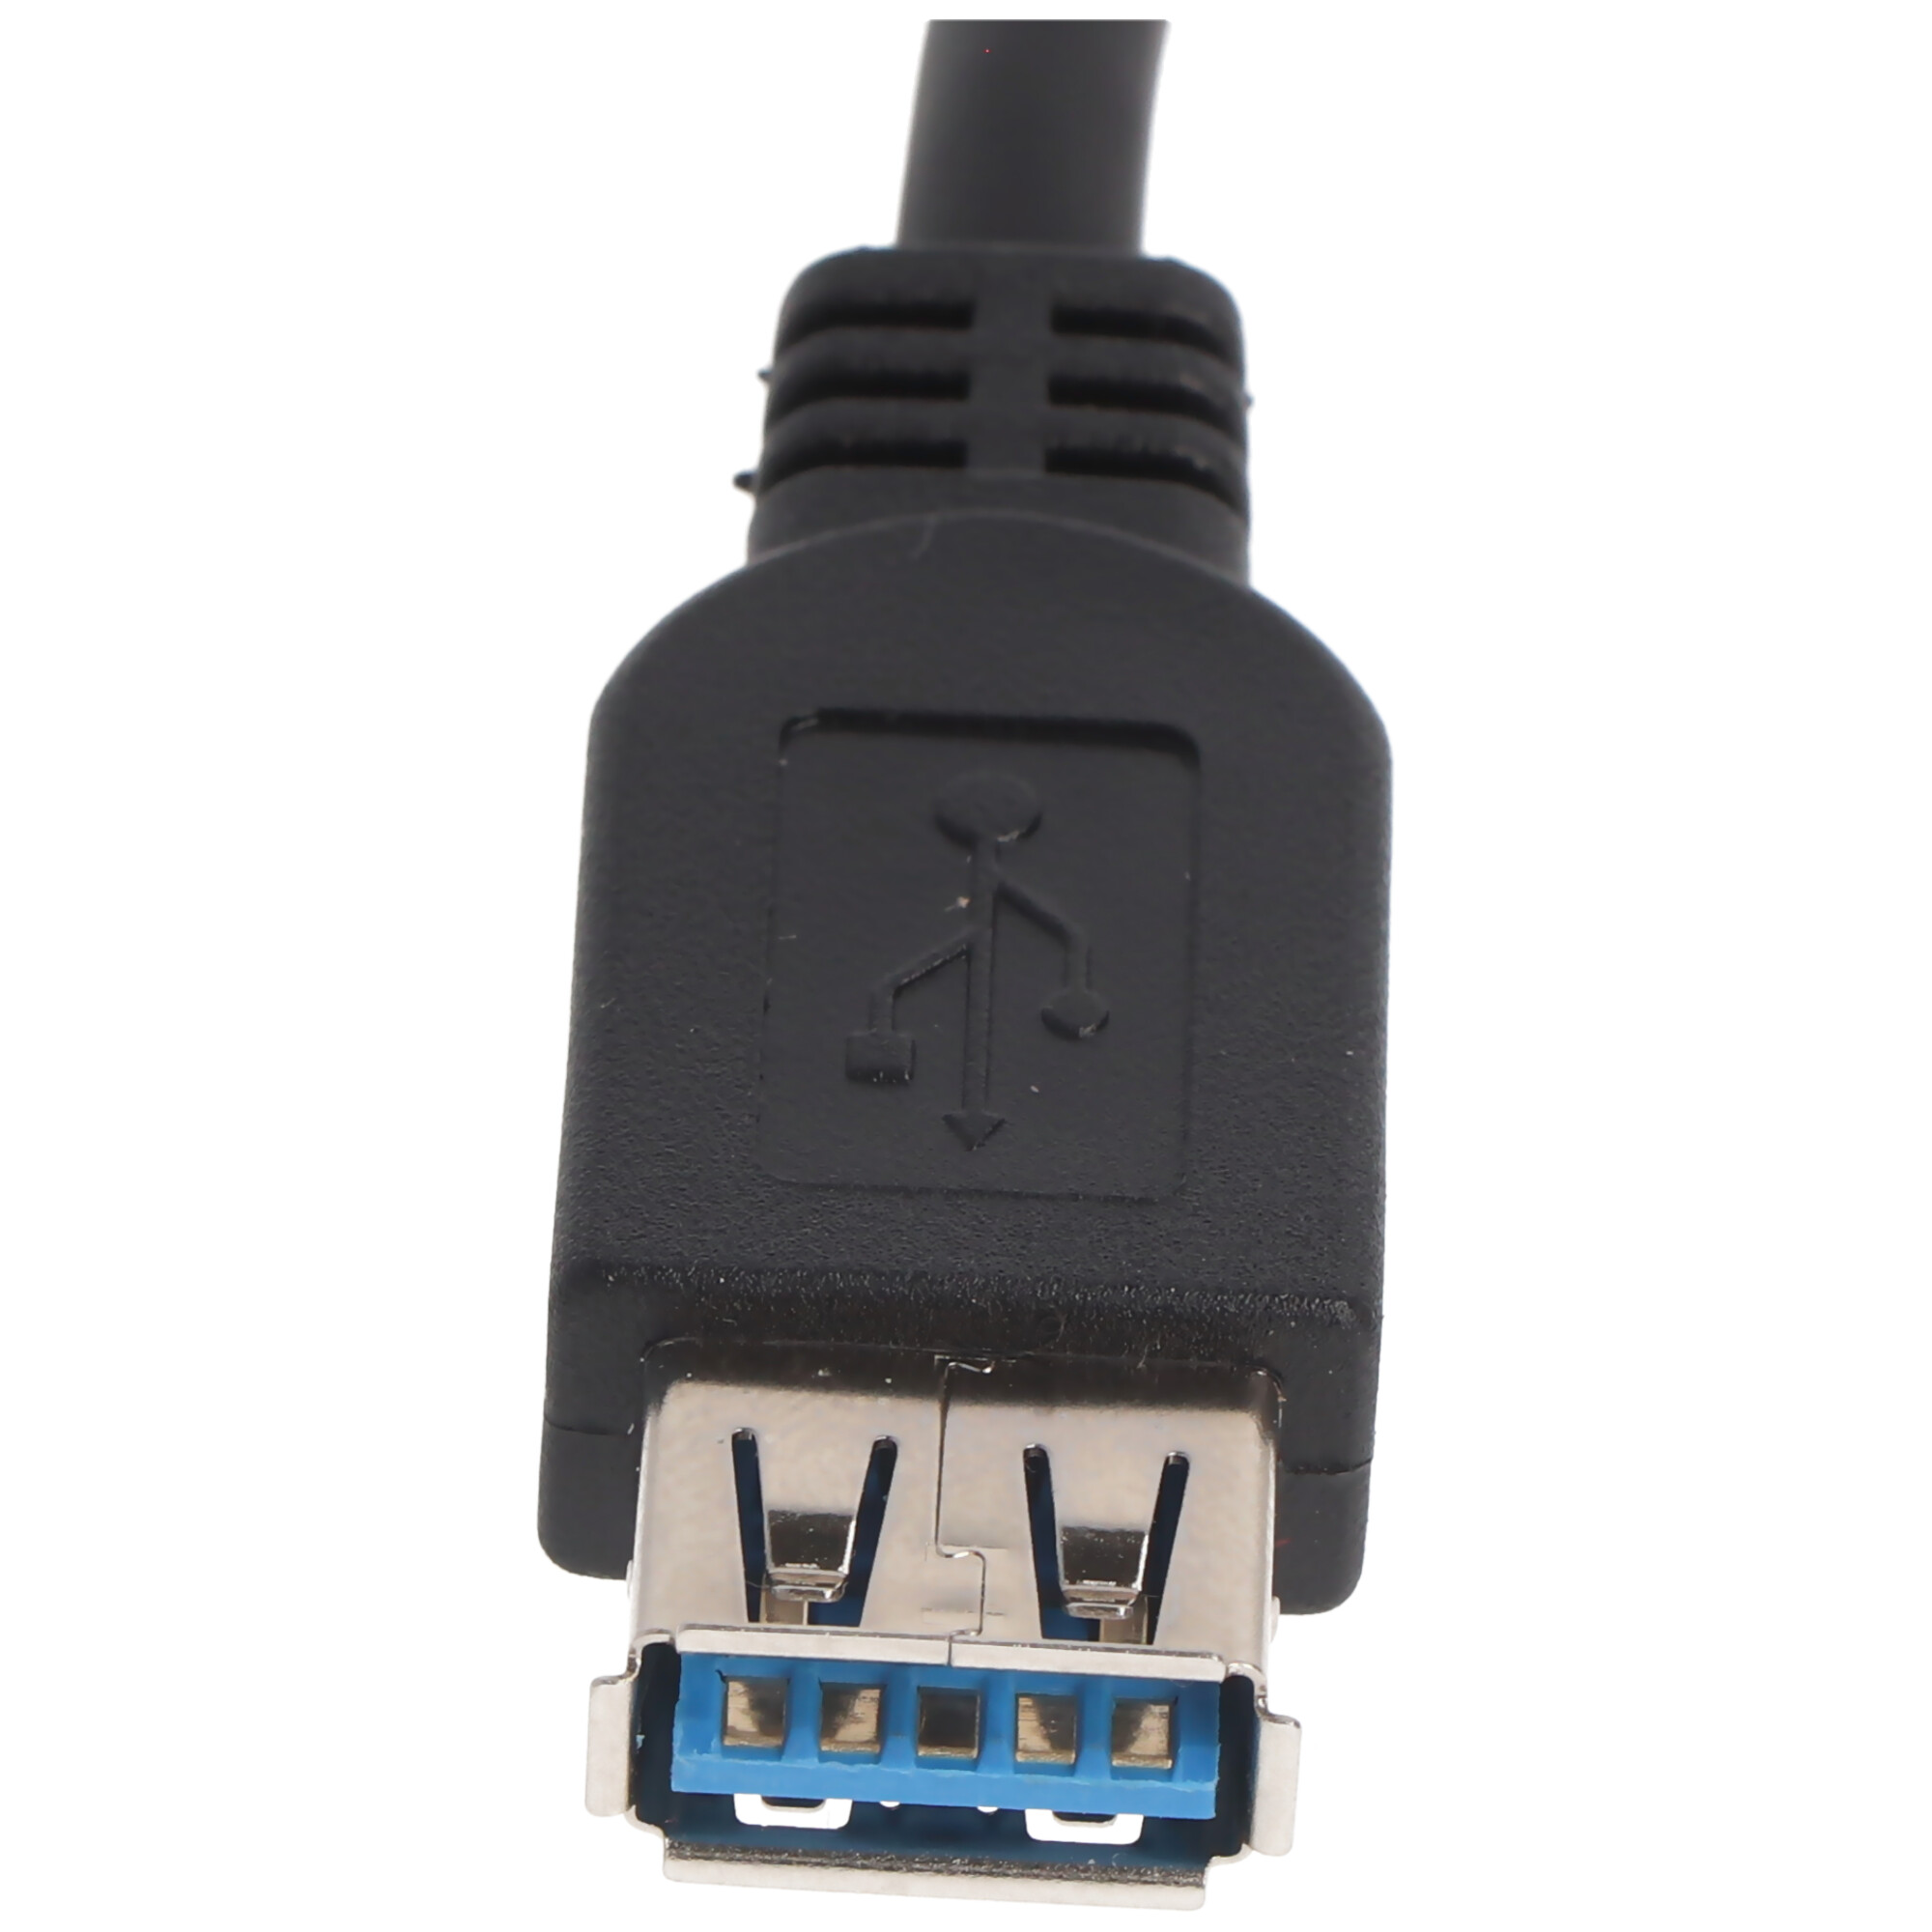 USB-C Stecker auf USB A Buchse mit Kabel schwarz 20cm